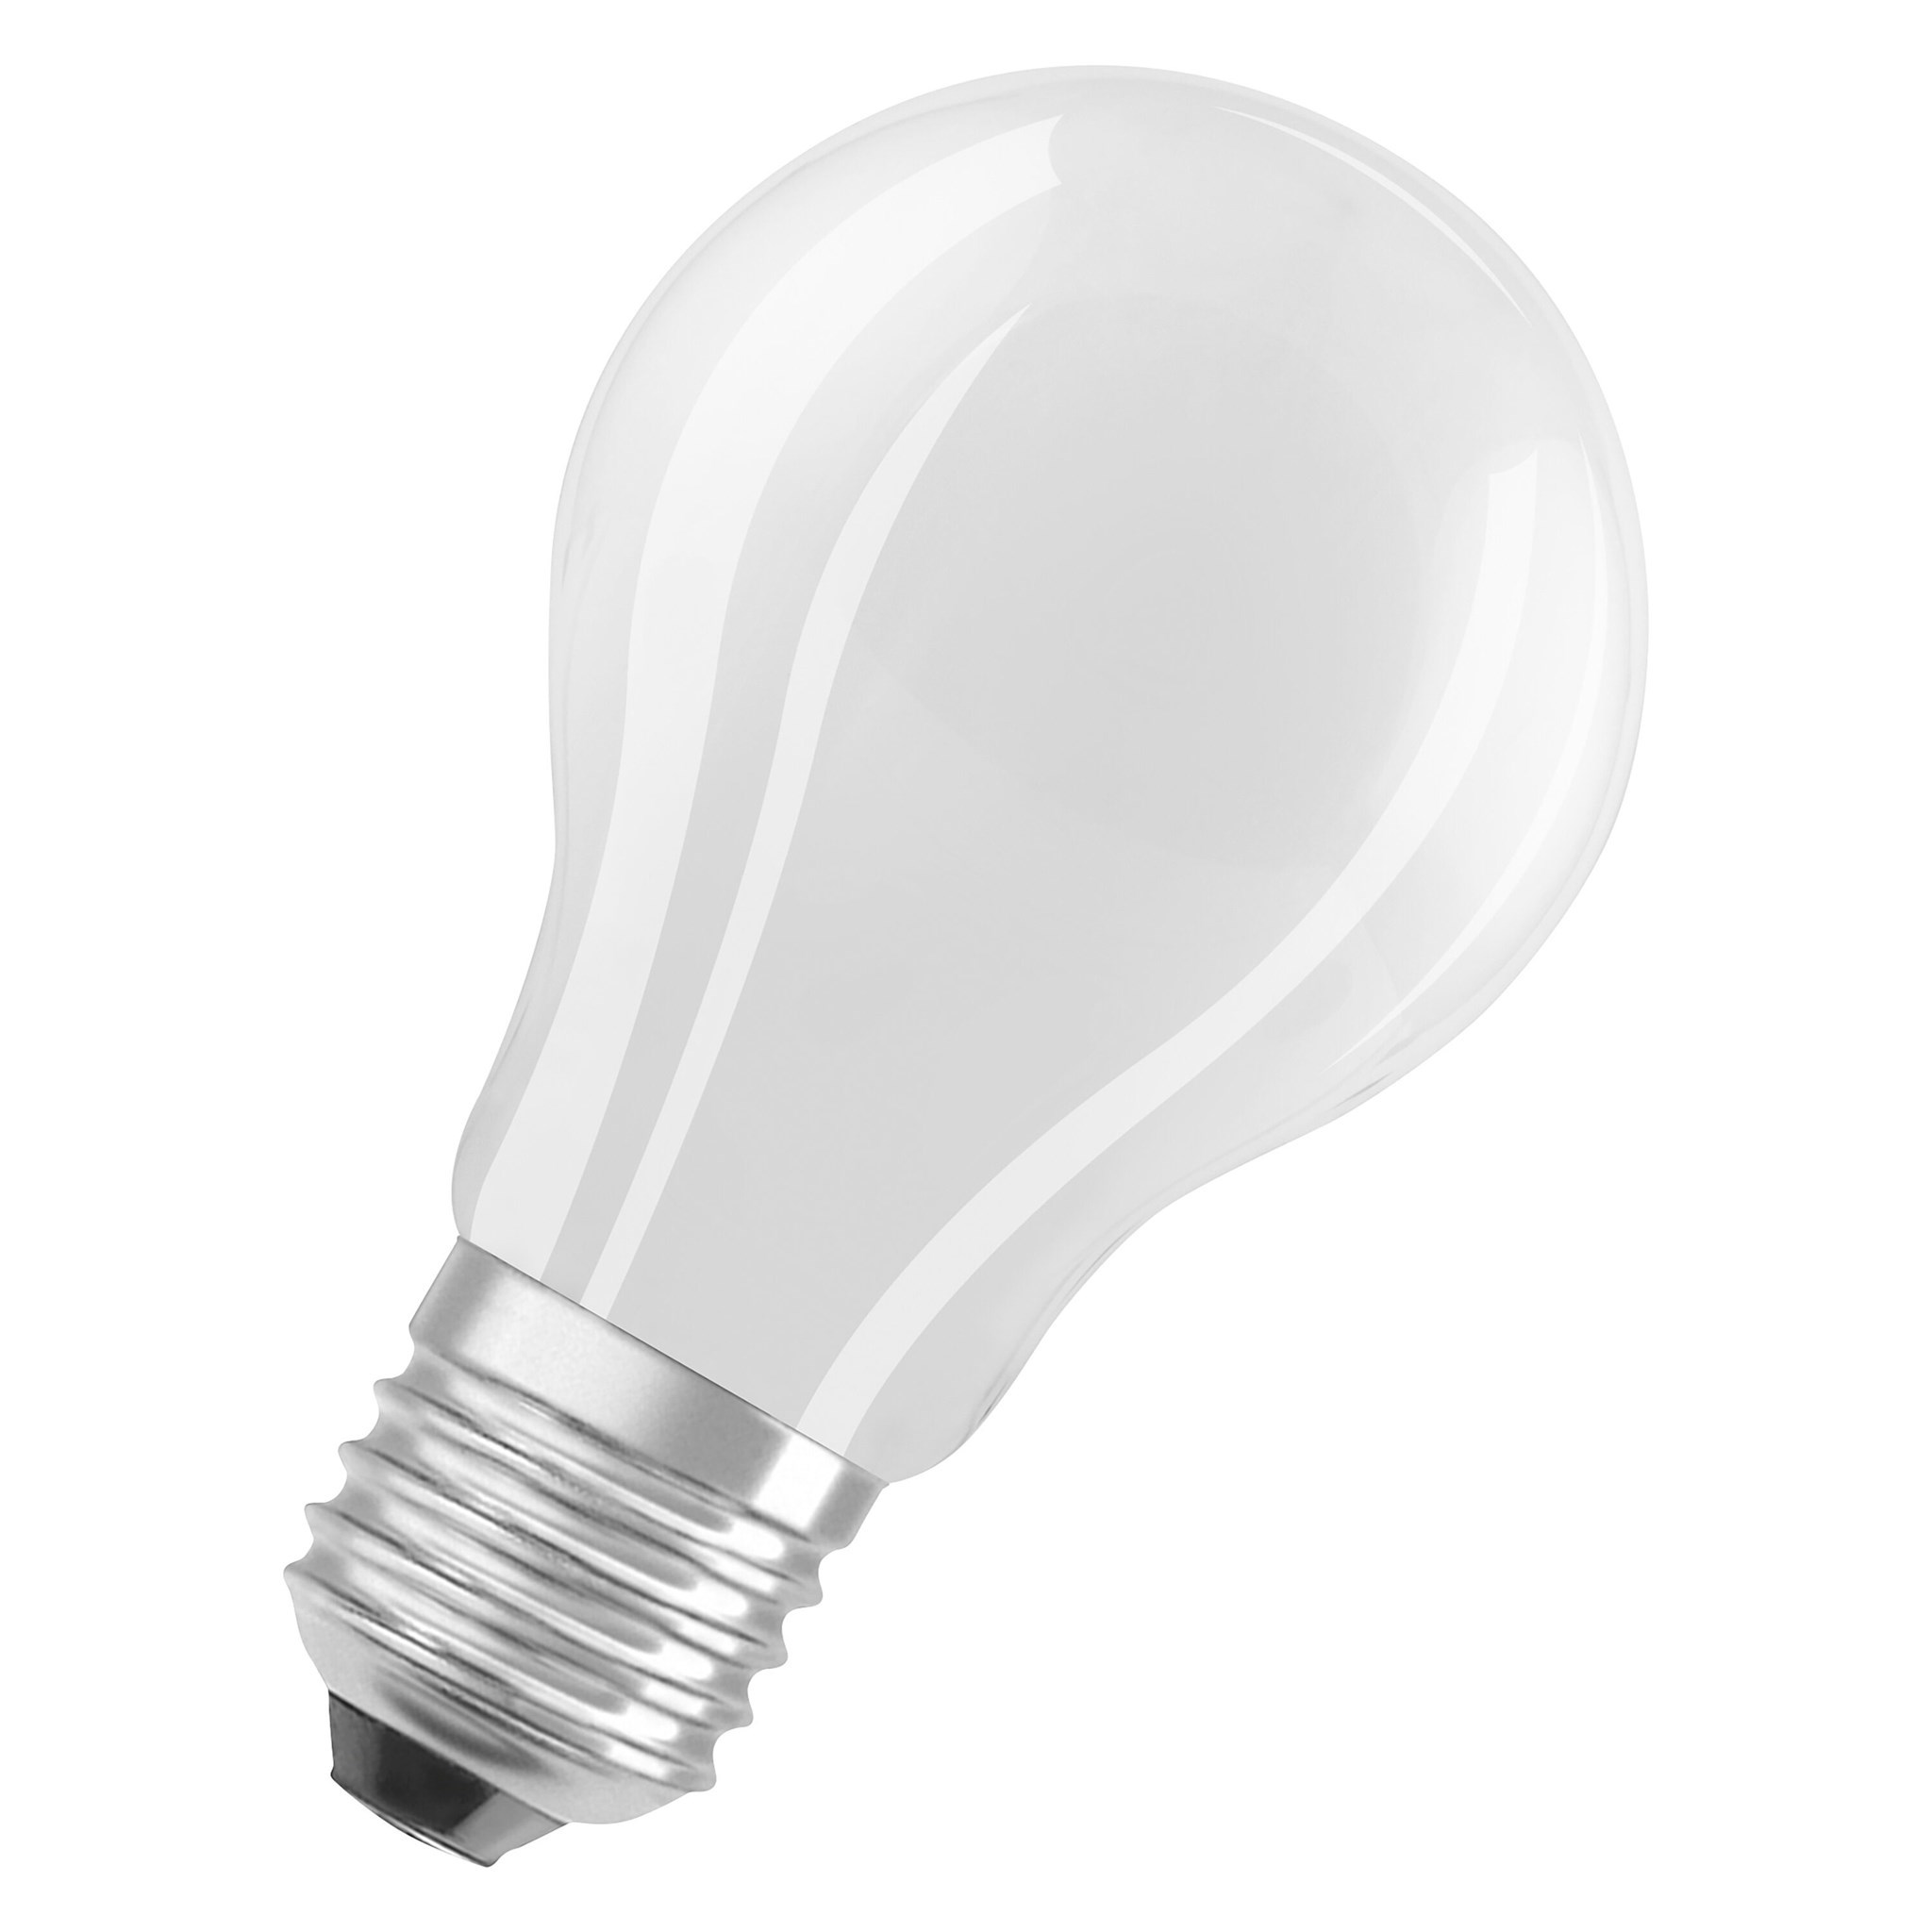 Bild von LEDvance LED Filament Glühlampe A60 / 806 lm / 6,5W / E27 / 220-240V / 320° / 2.700 K / 827 ww matt / dimmbar